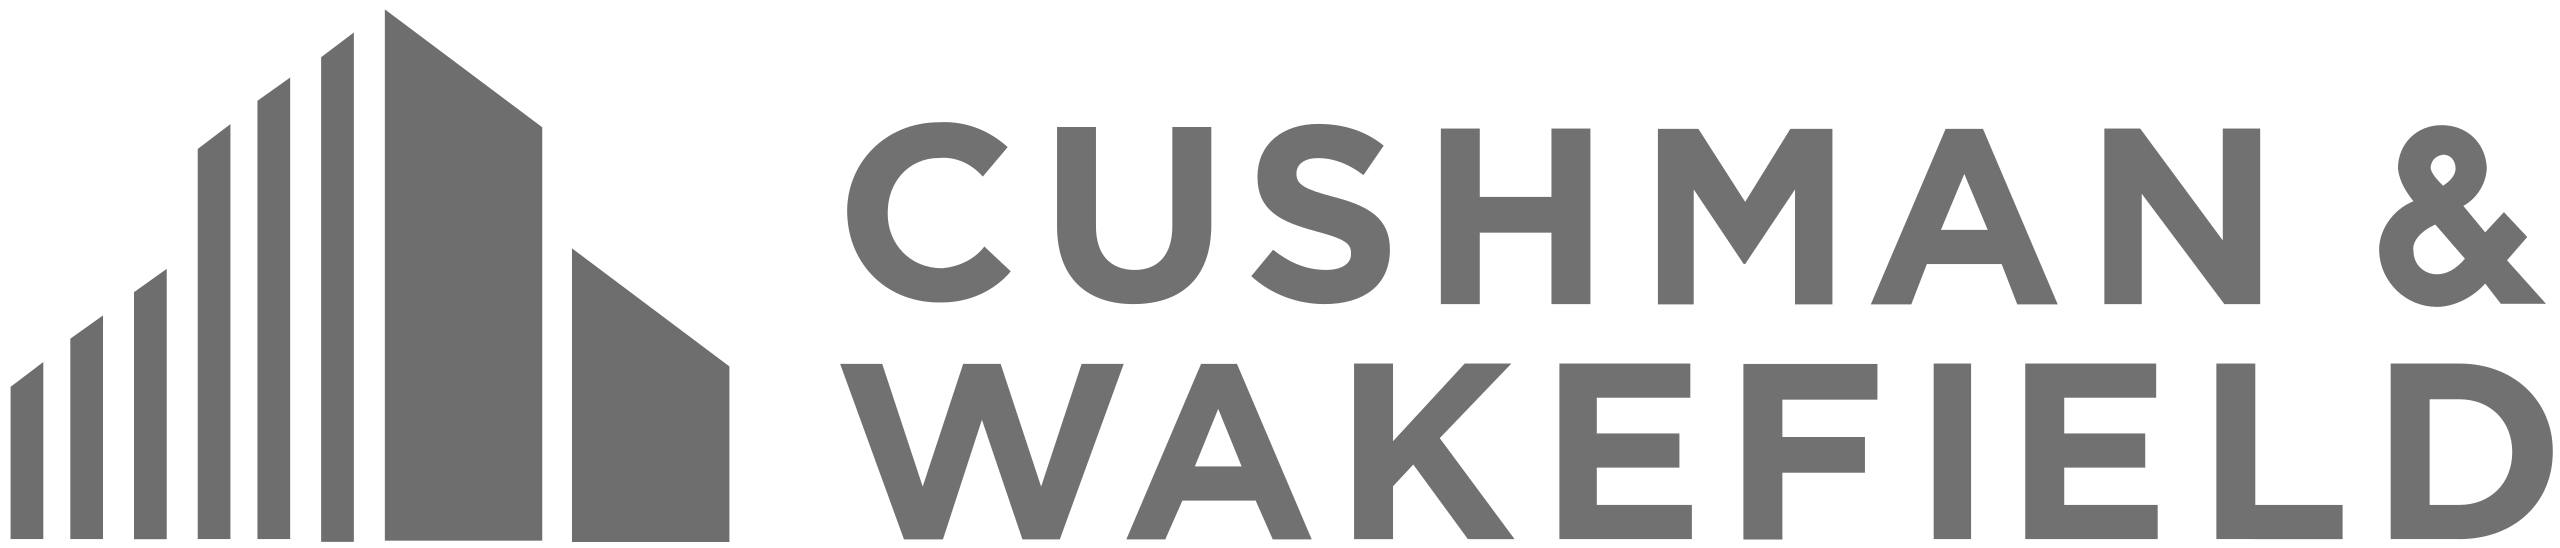 Cushwake